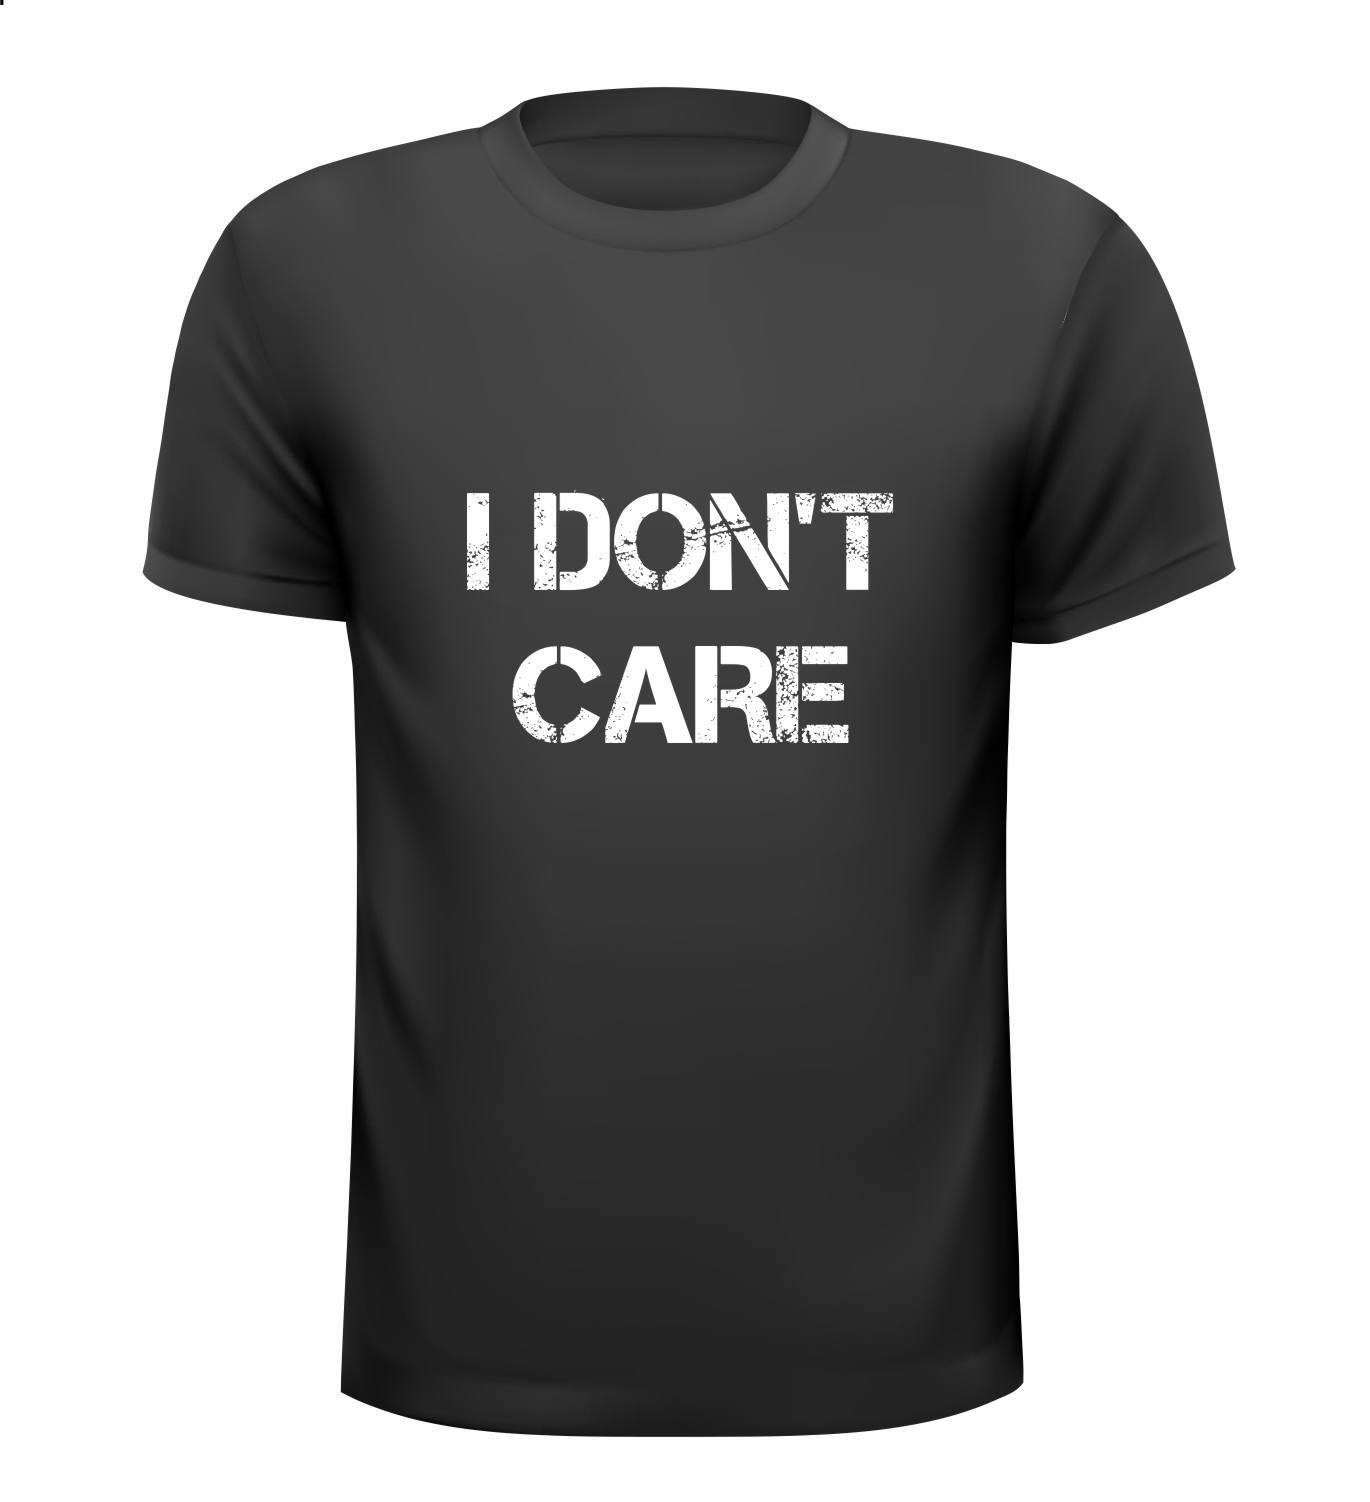 I don't care T-shirt